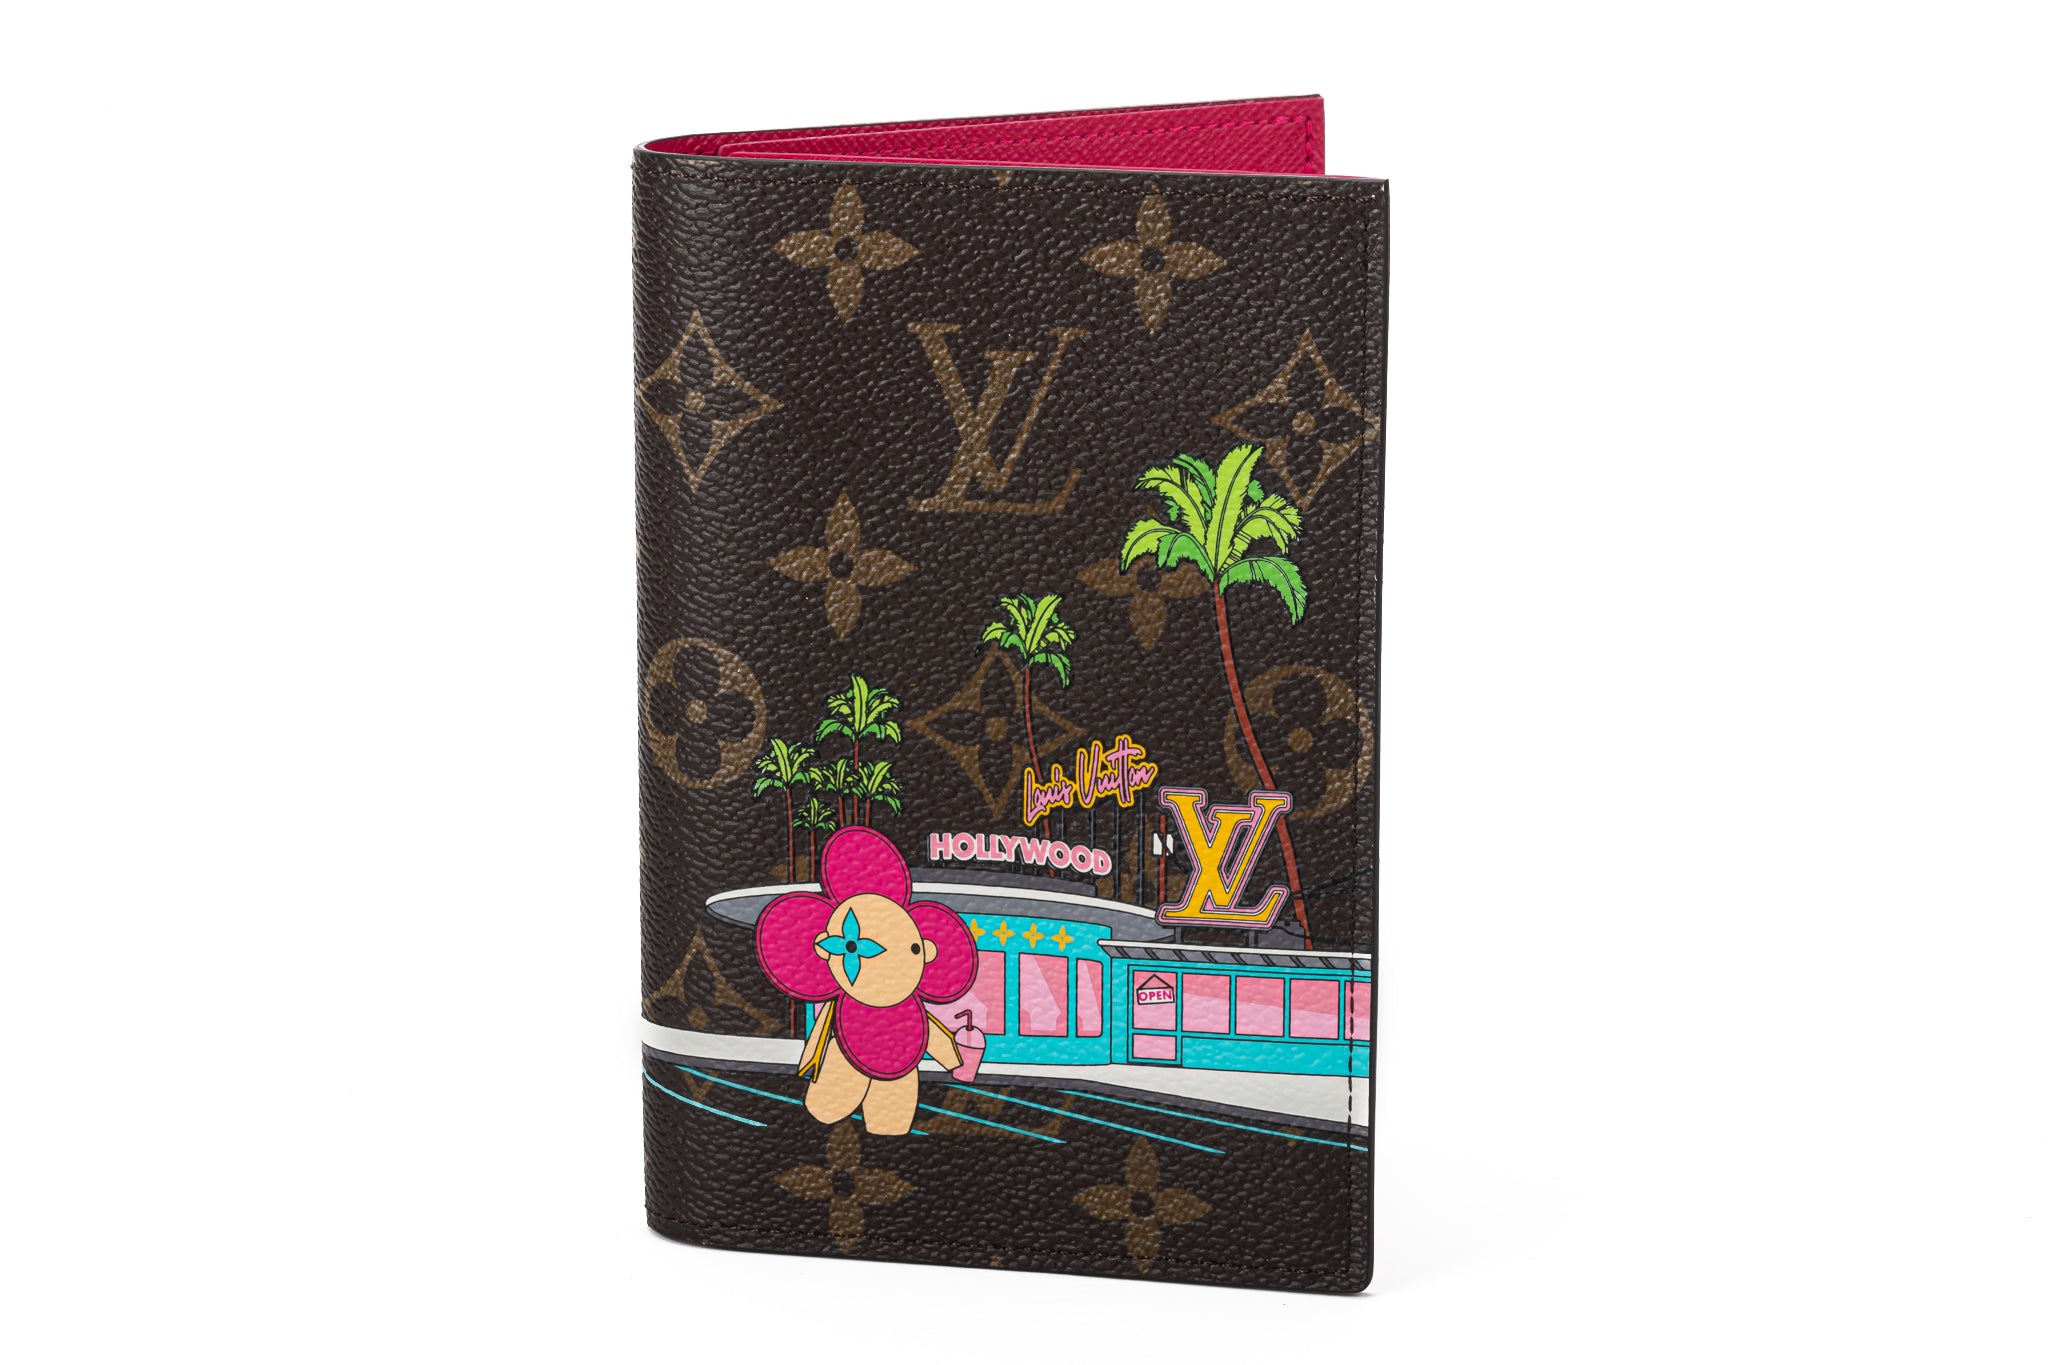 Louis Vuitton Passport Cover Limited Edition Vivienne Xmas